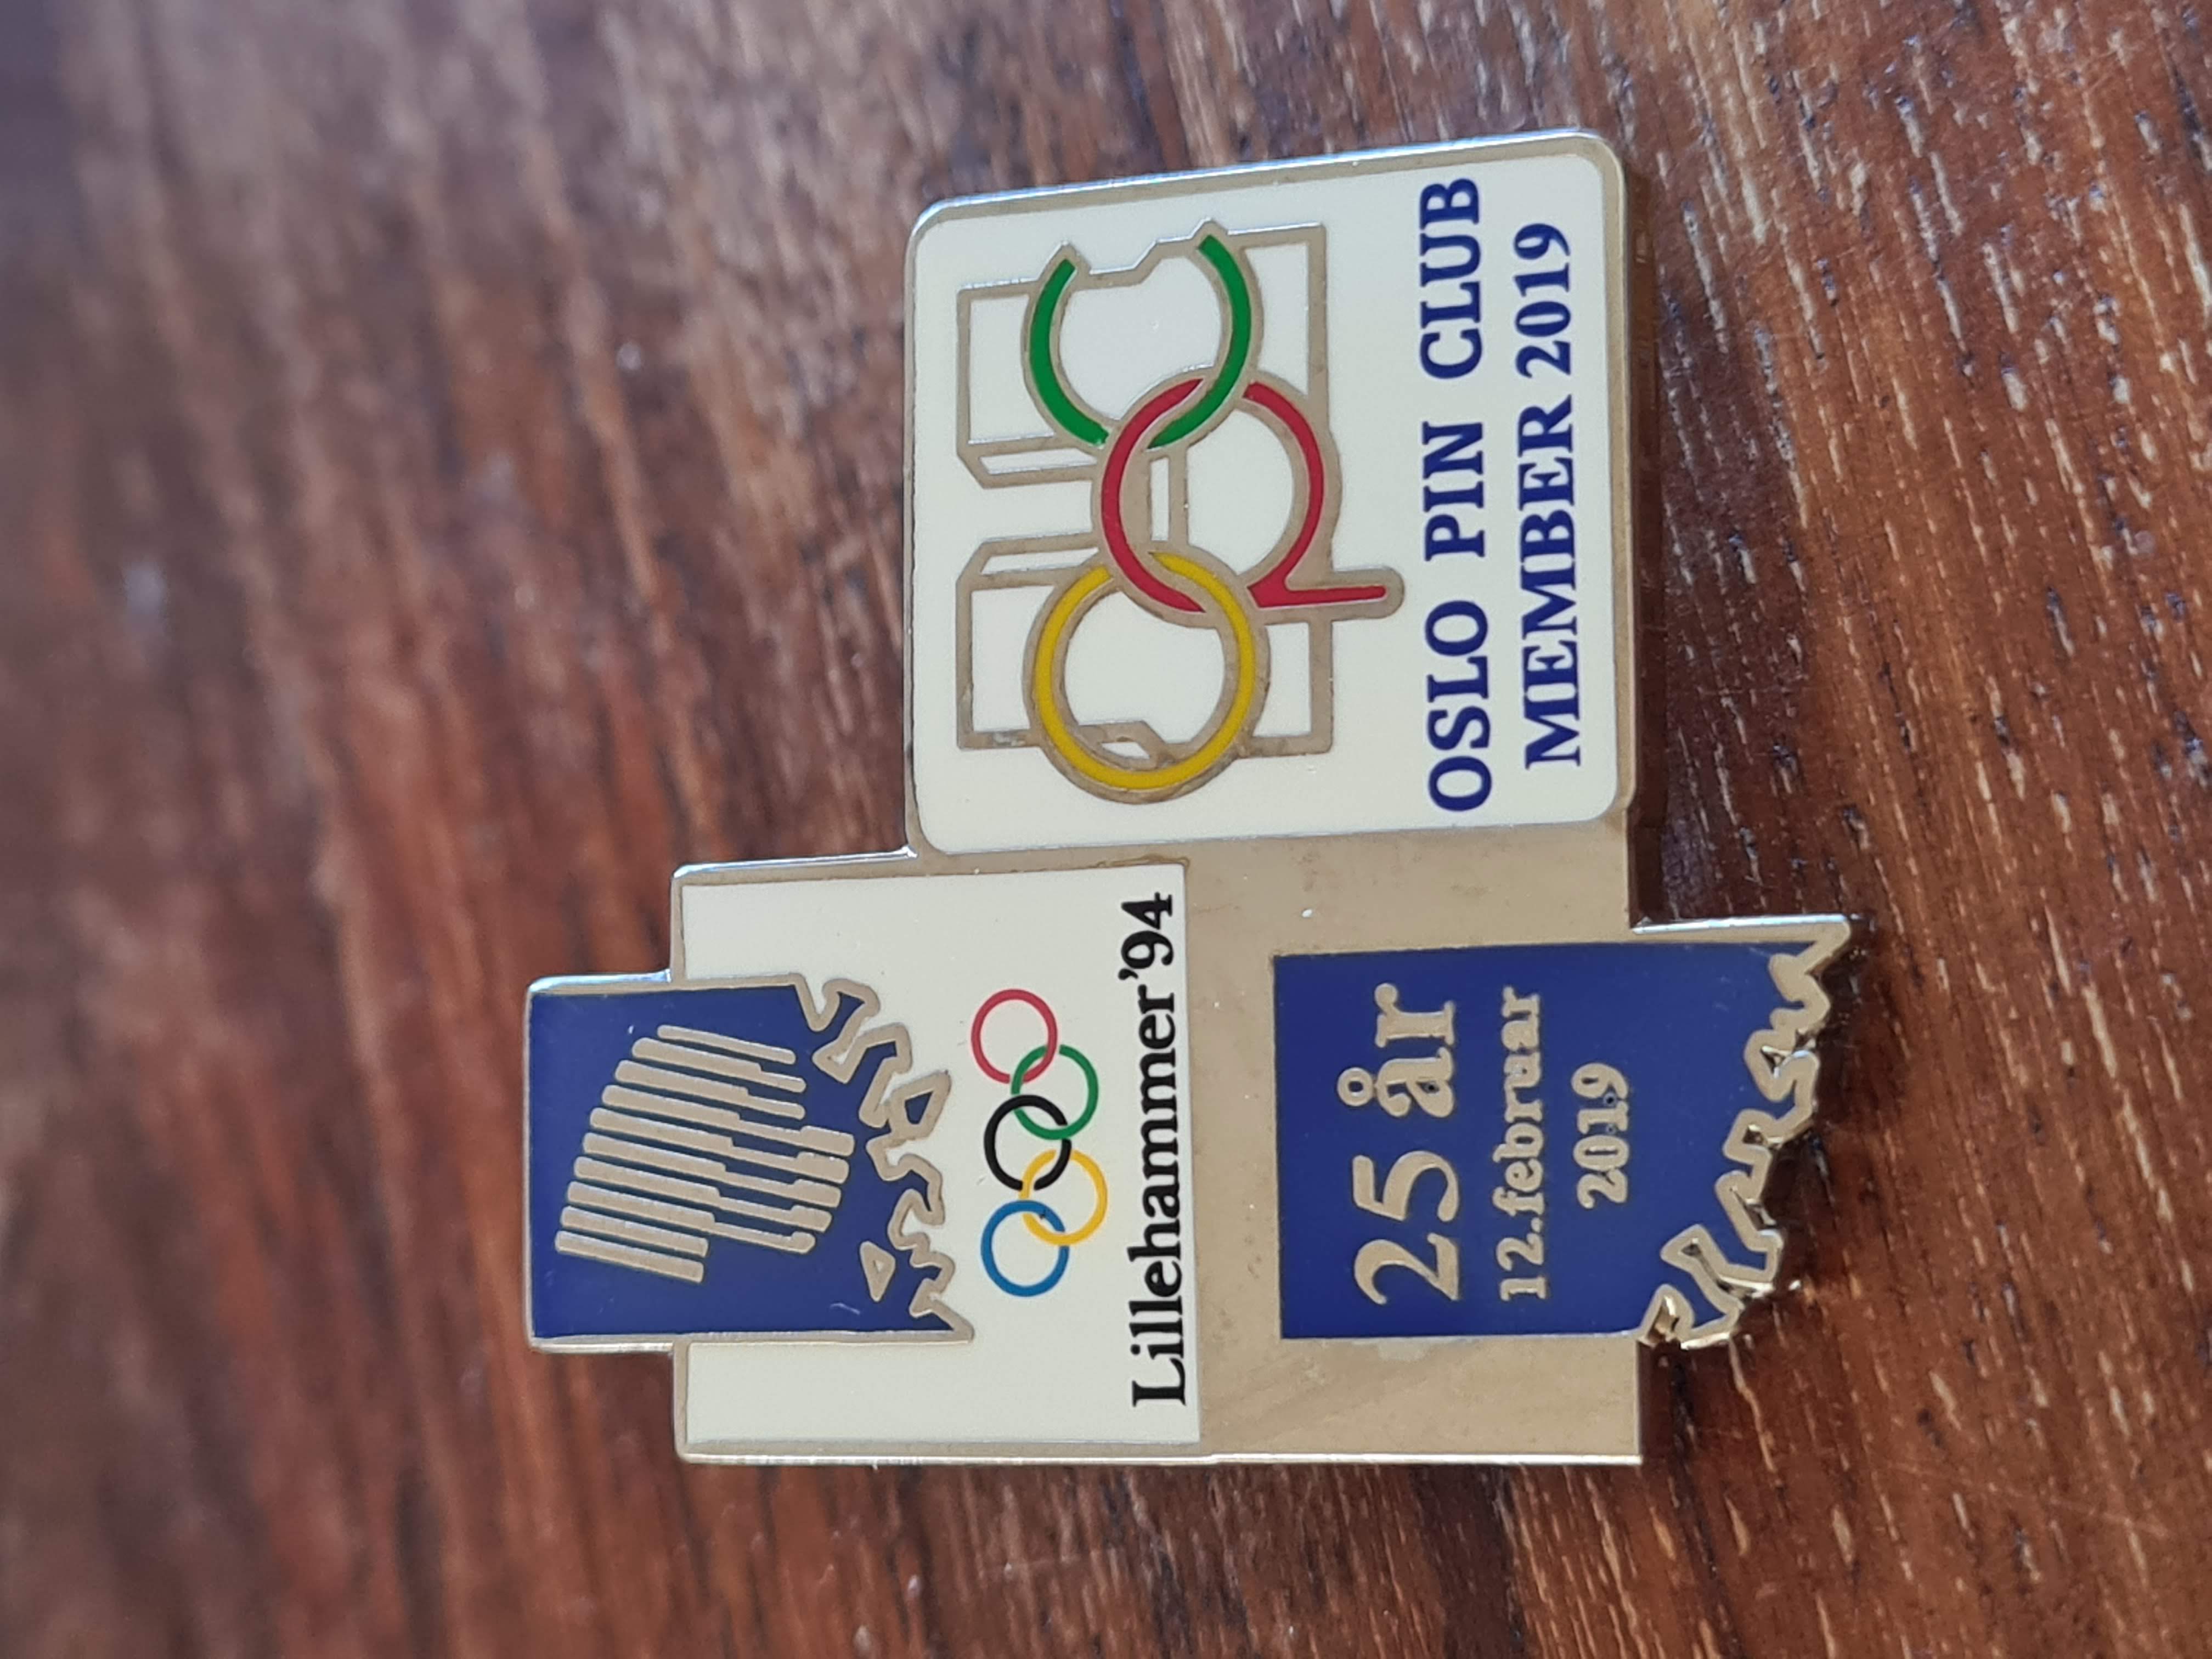 Oslo Pin Club members pin 2019 - 25 years